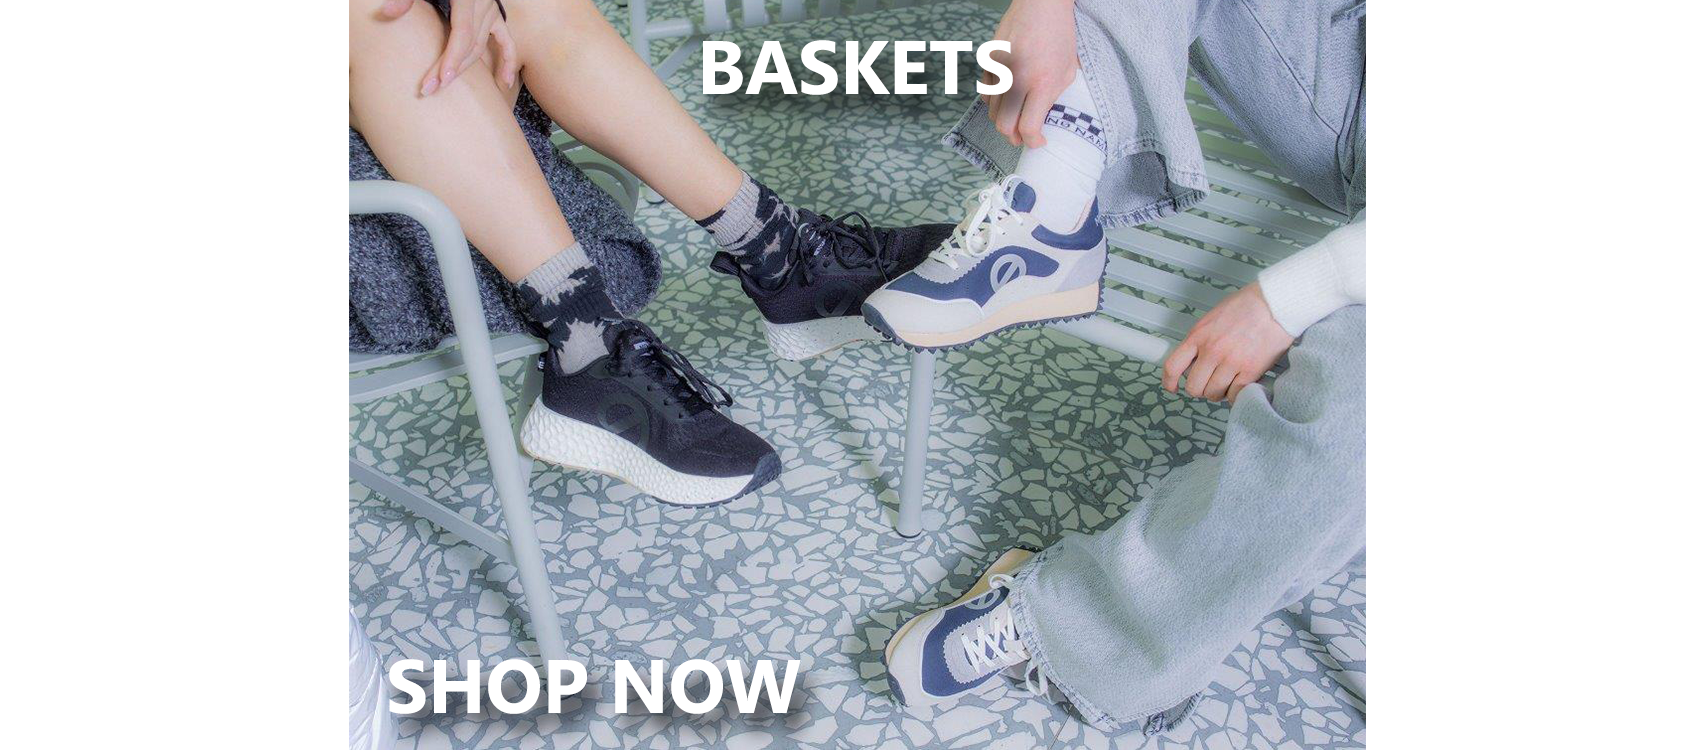 Baskets shop now